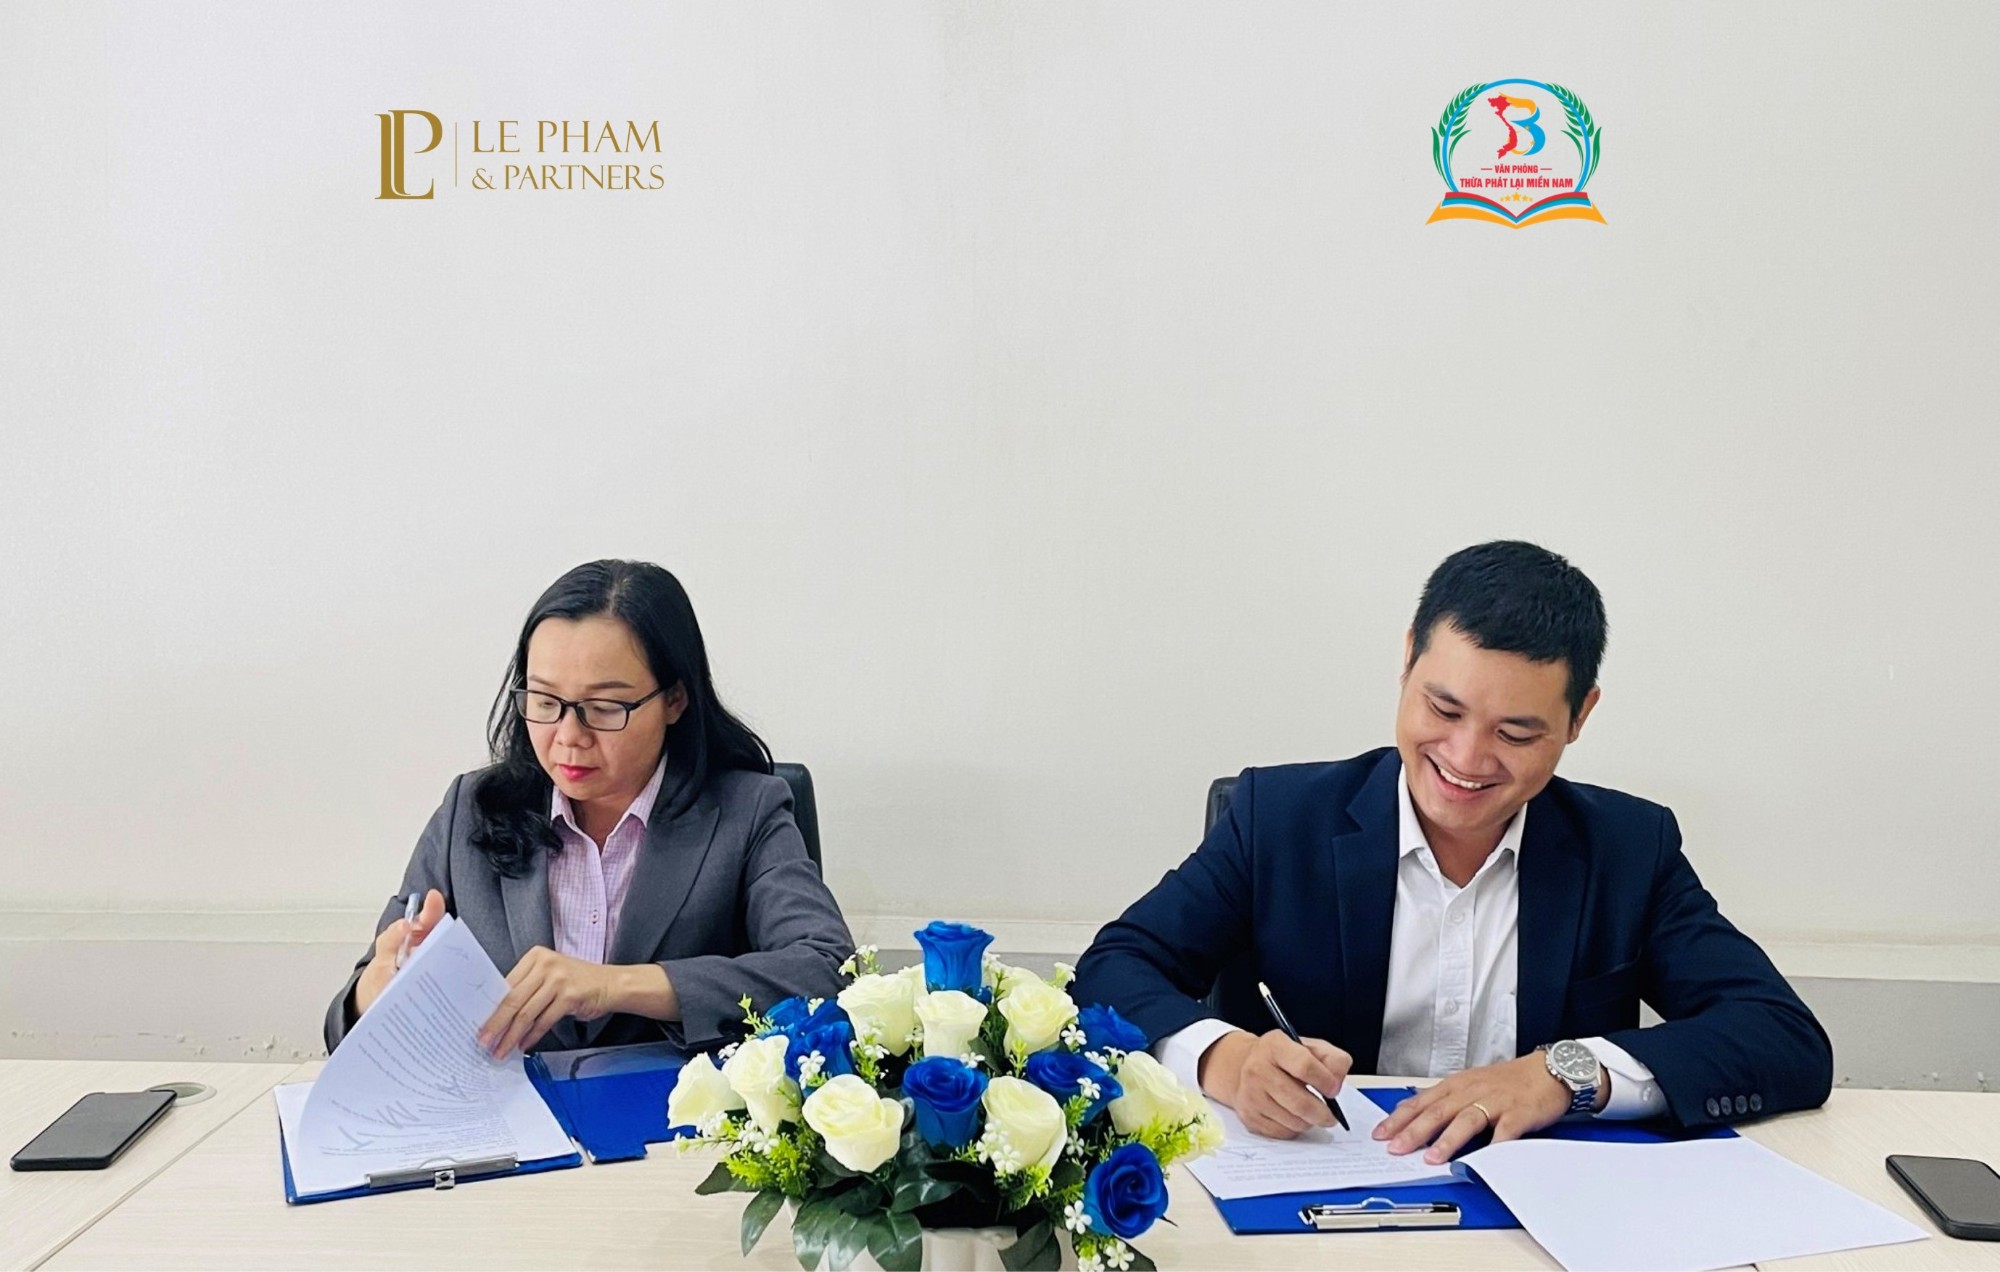 TPL Miền Nam ký Thỏa thuận hợp tác với Hãng luật LP&P